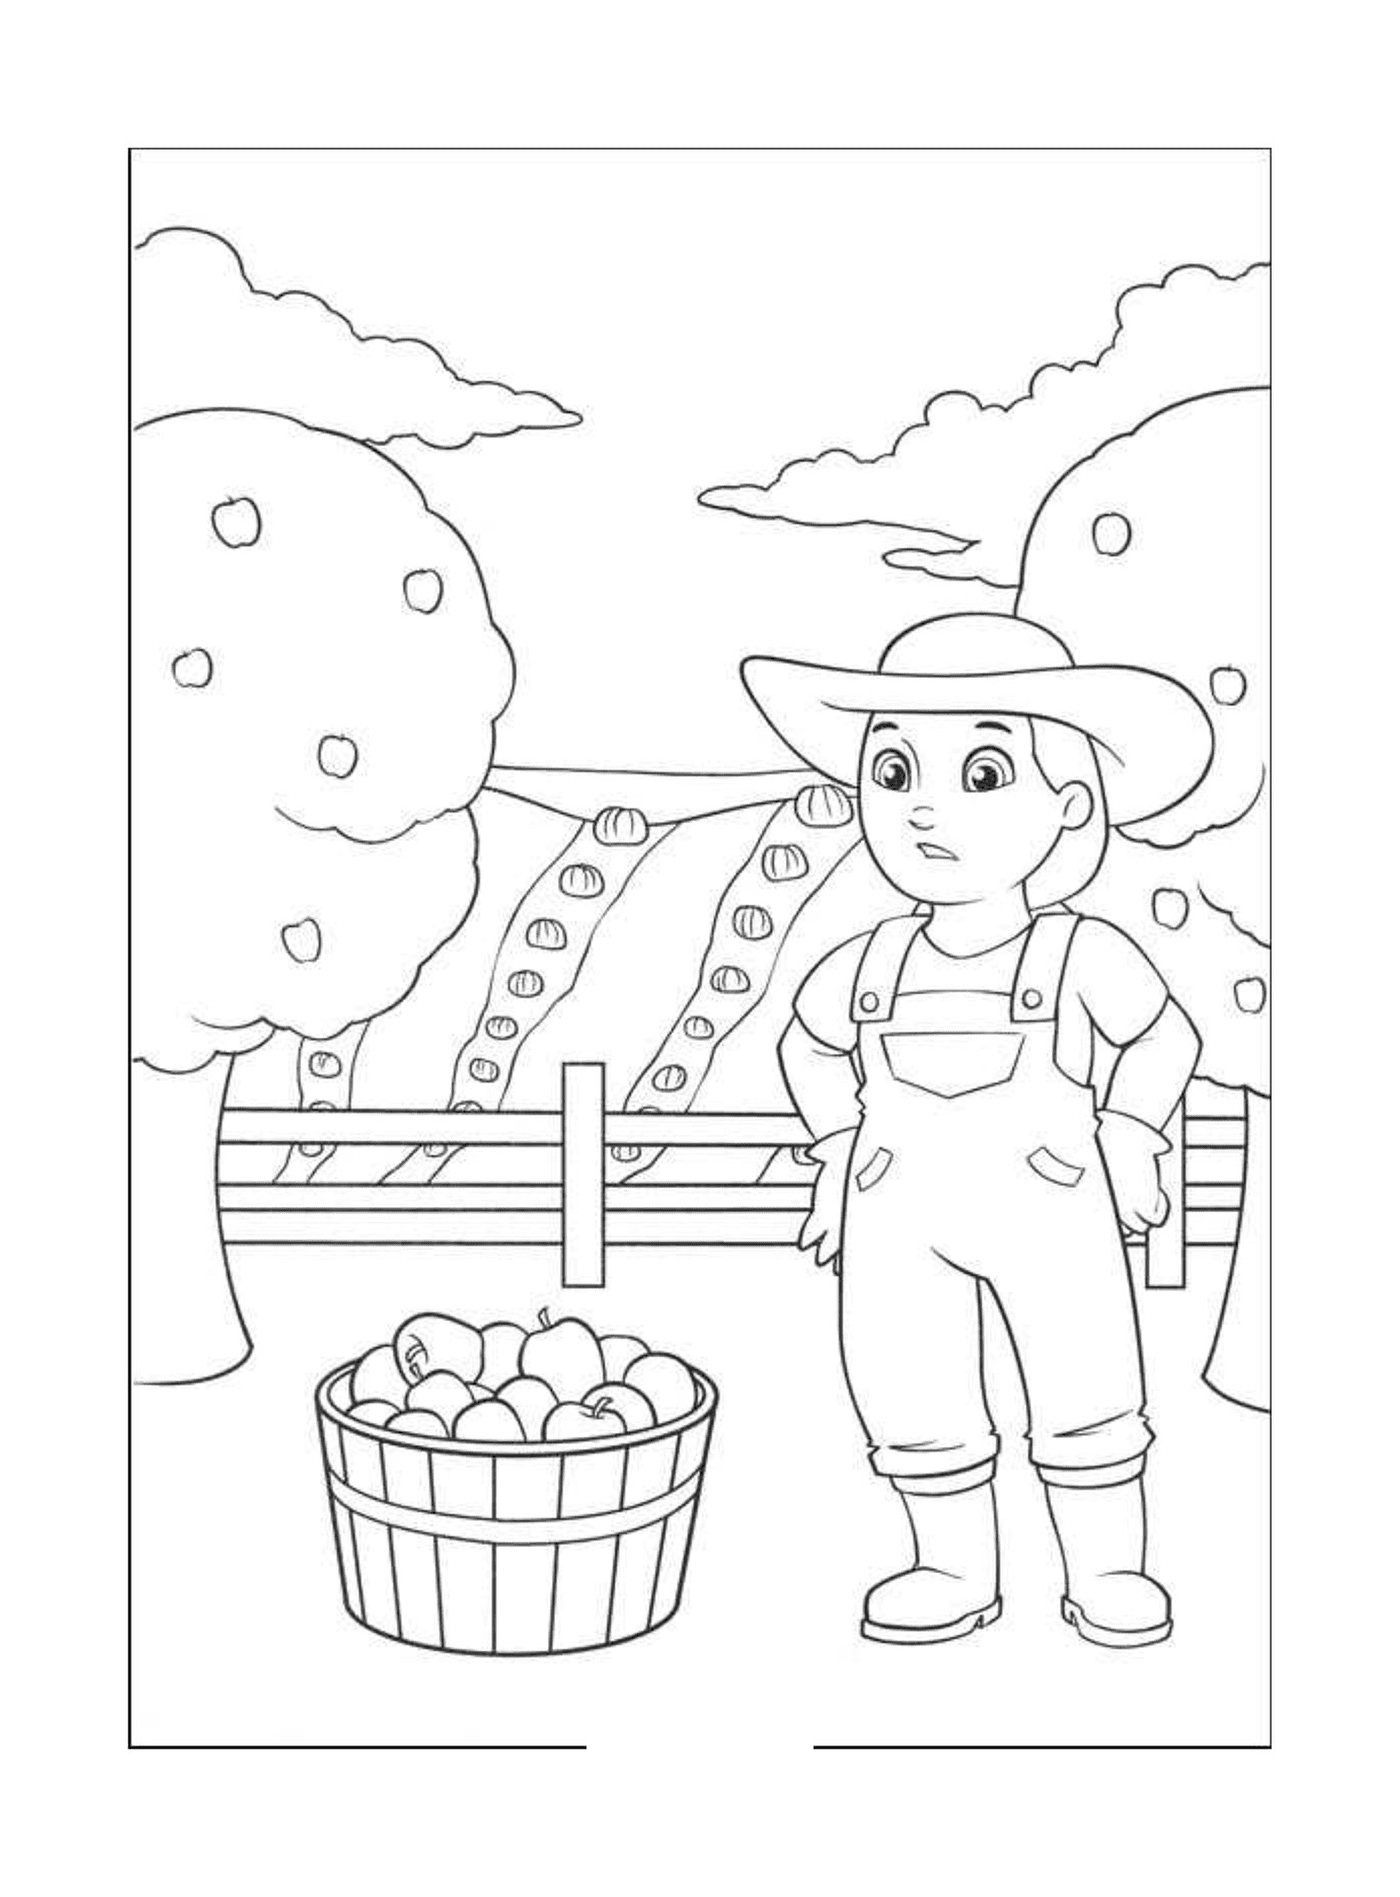 La fermiere Yumi recolte des pommes